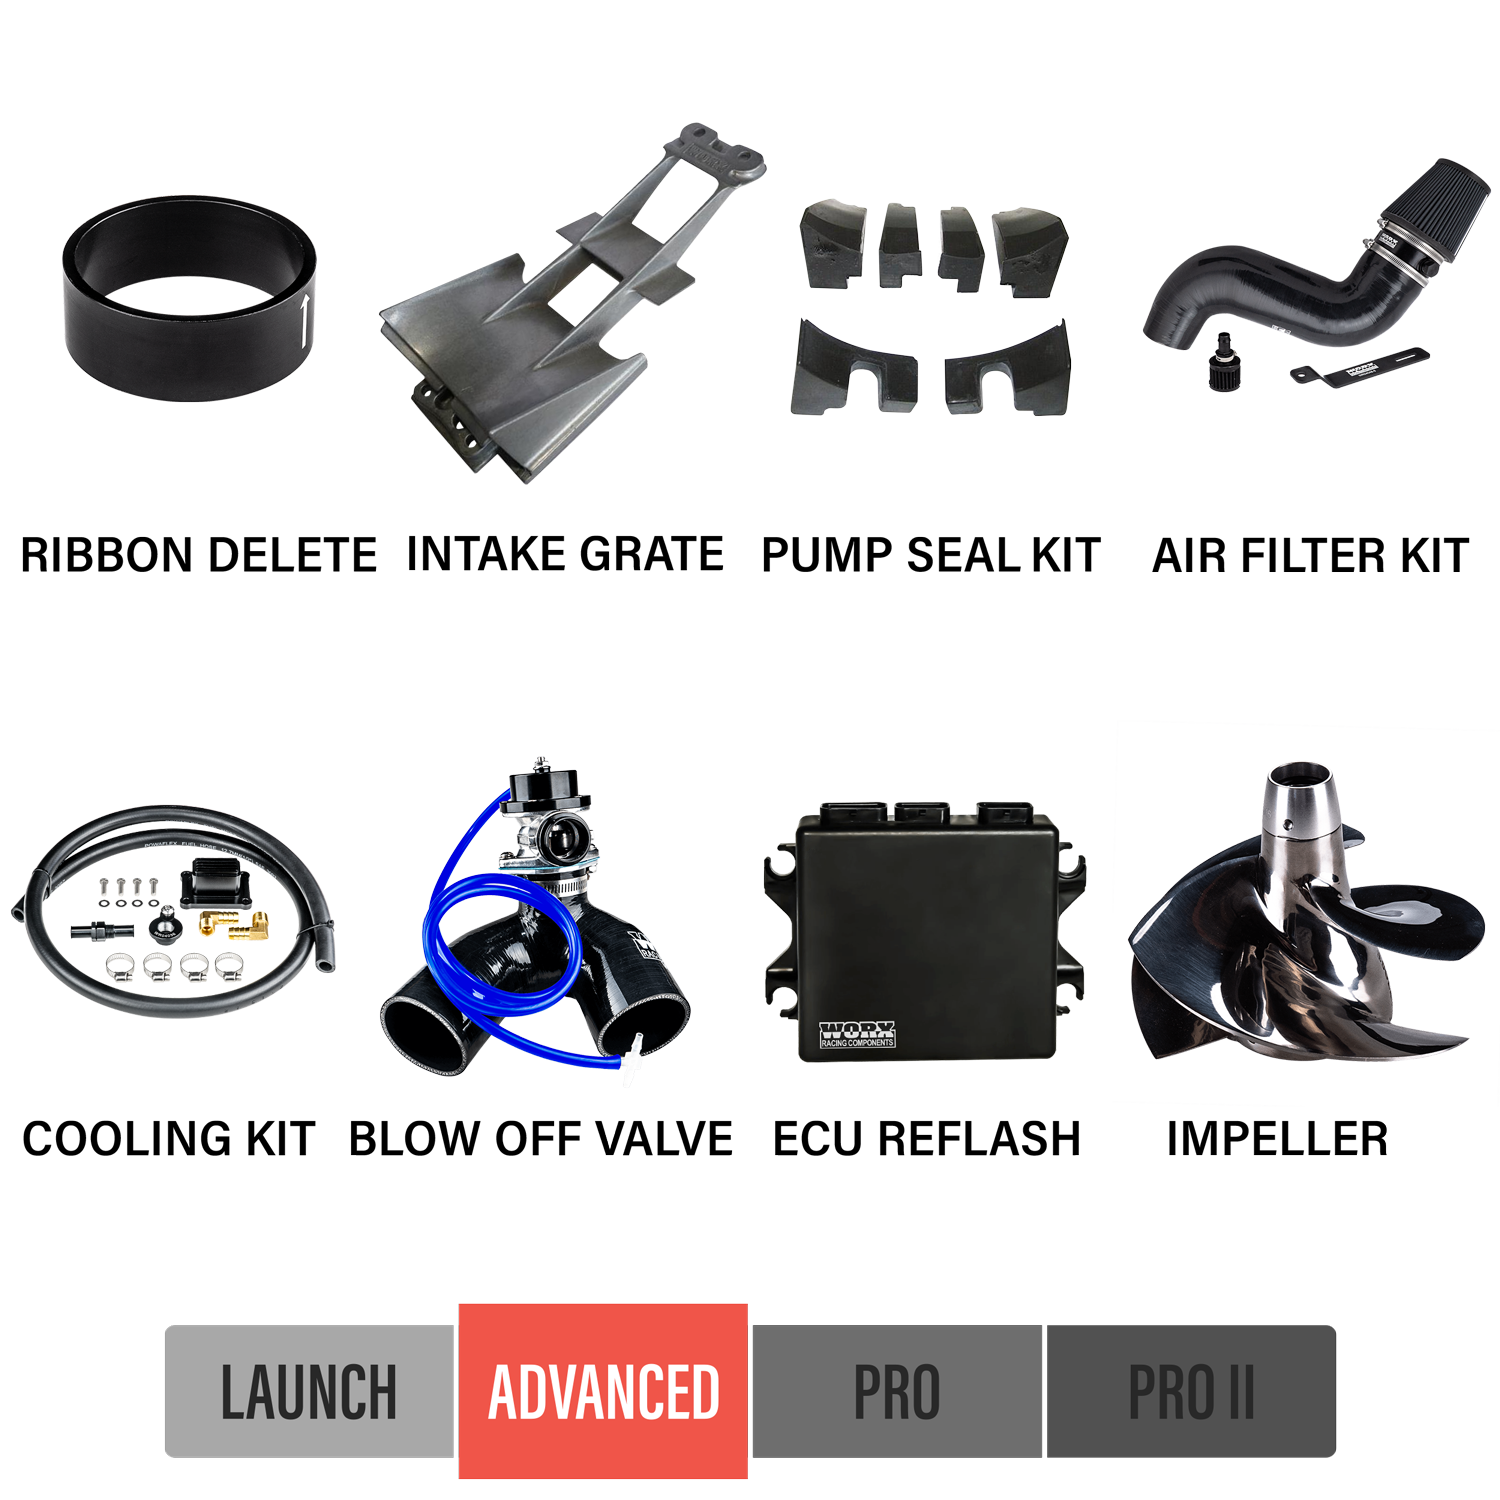 2009-2013 Yamaha FZR/FZS SHO Upgrade Kits